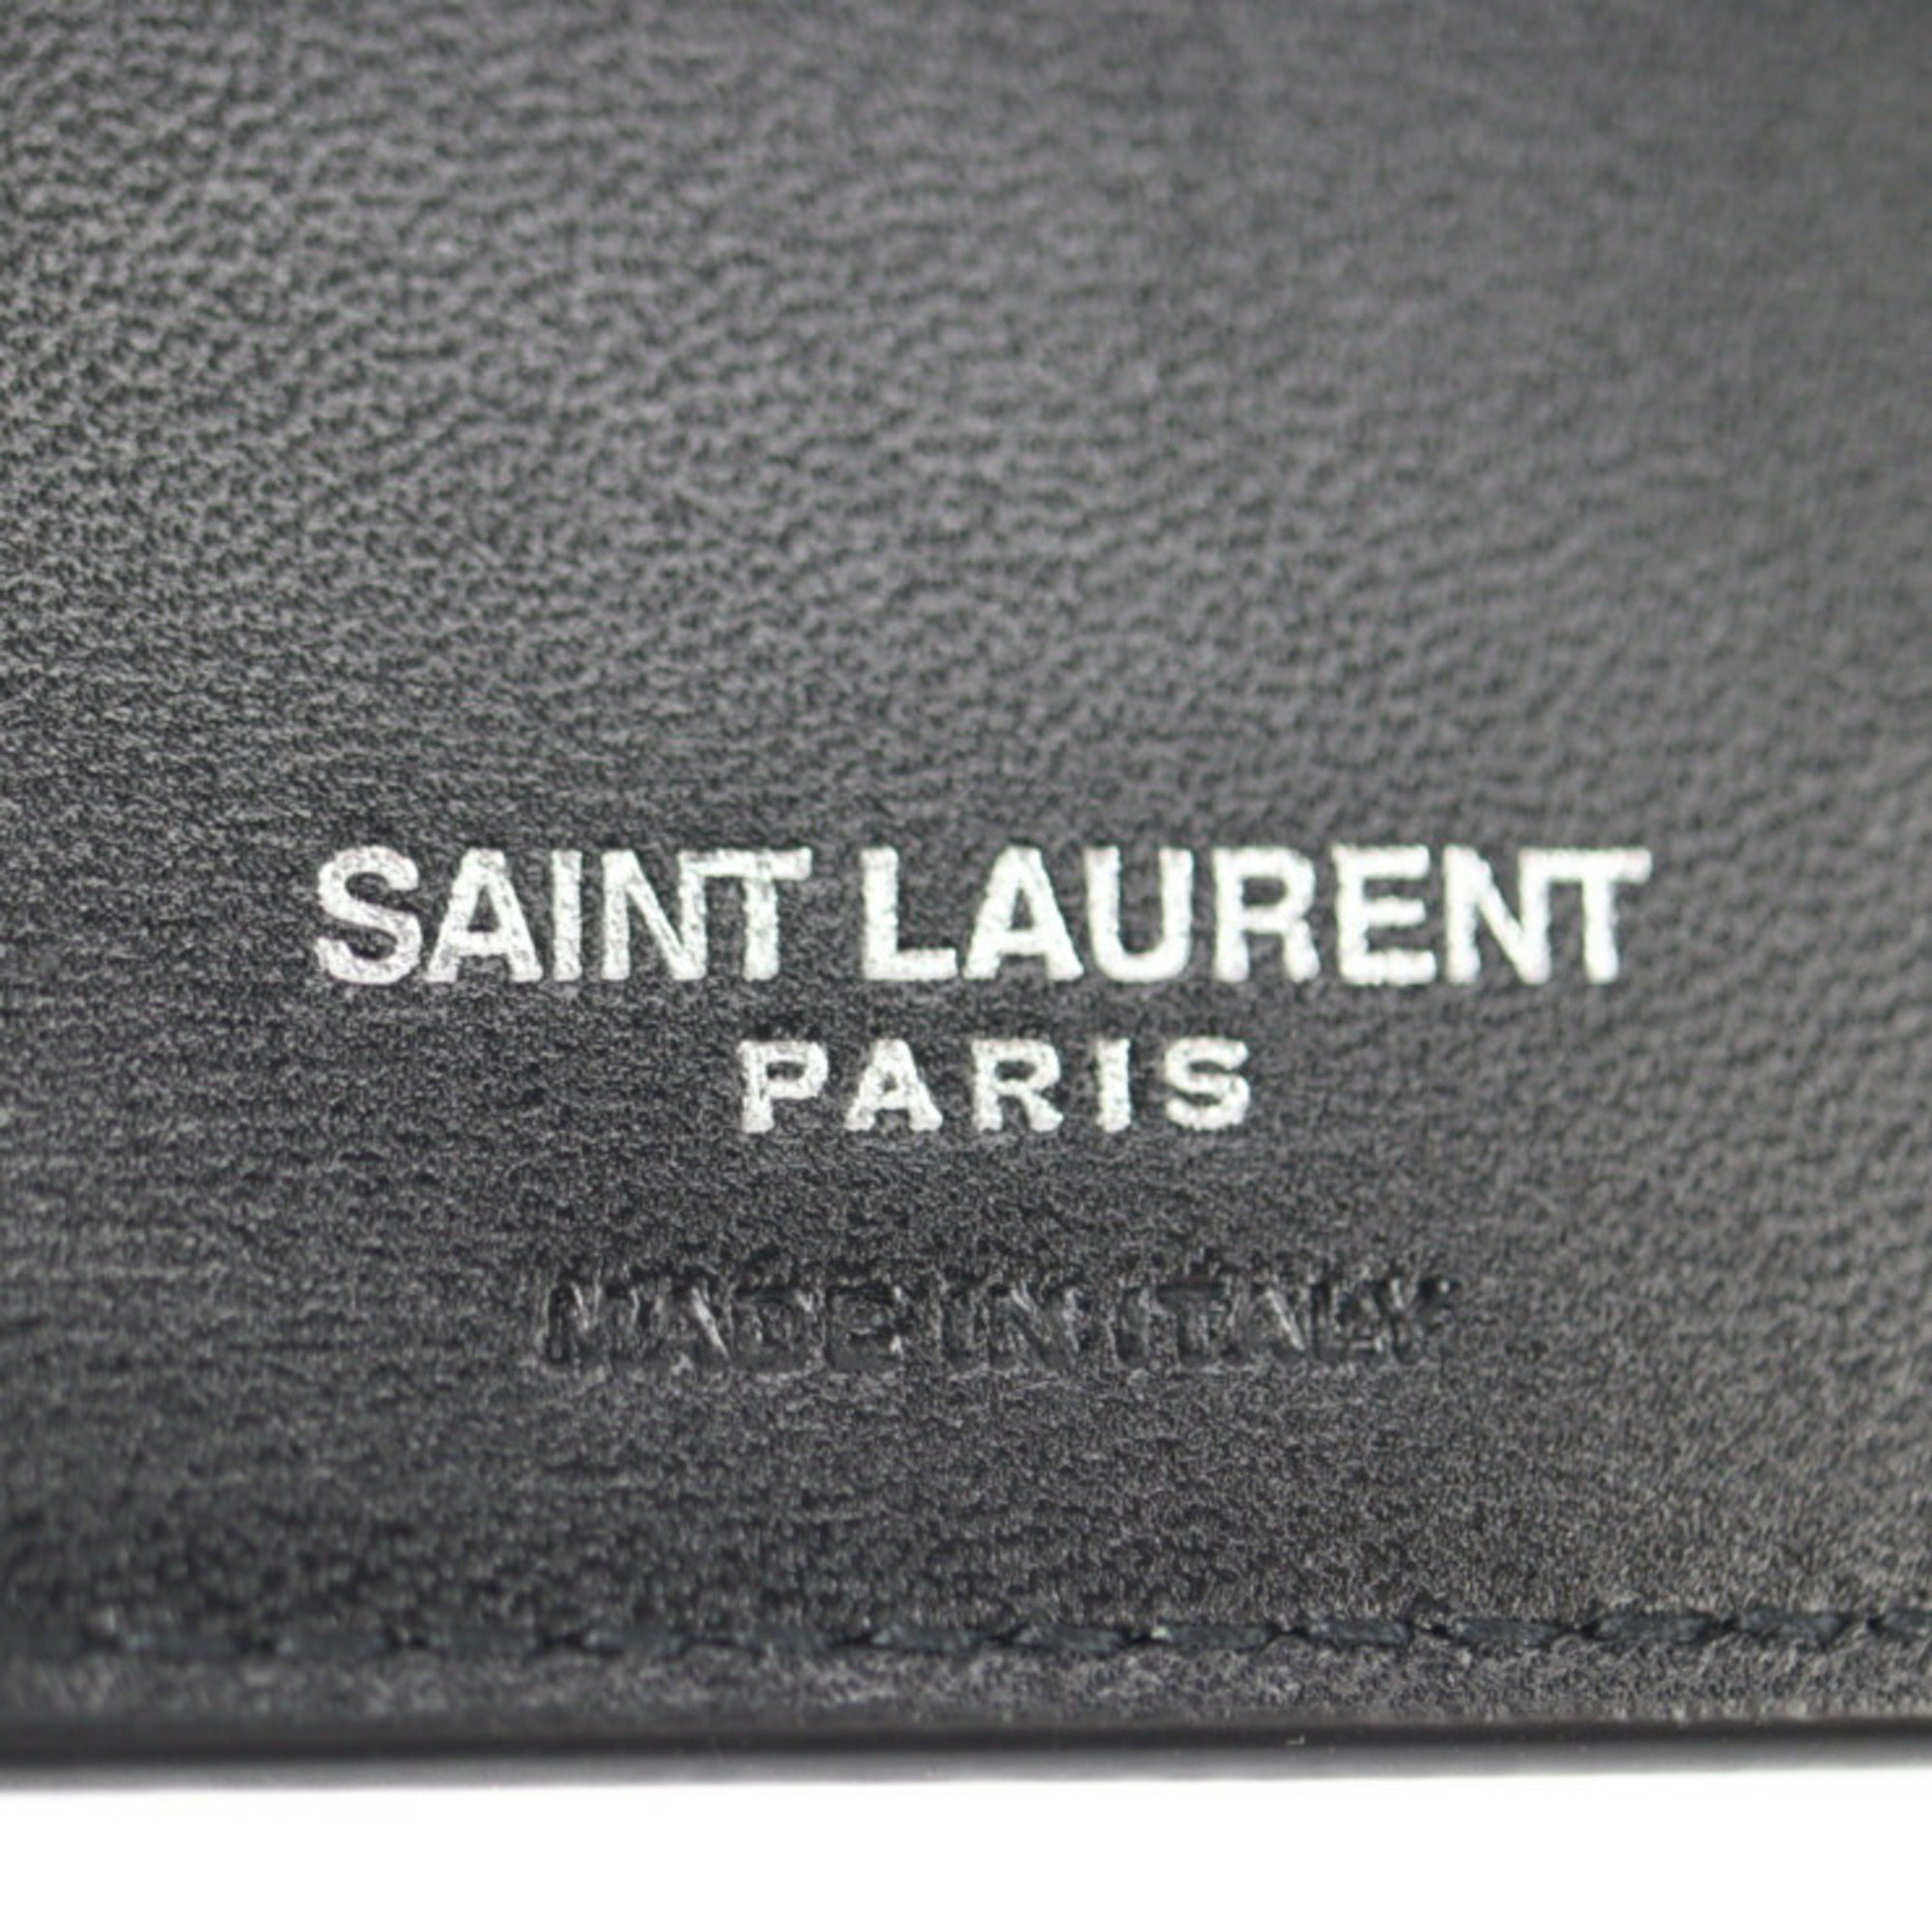 Yves Saint Laurent SAINT LAURENT PARIS Saint-Laurent Paris folio wallet 630072 calf leather NERO black silver metal fittings L-shaped fastener logo